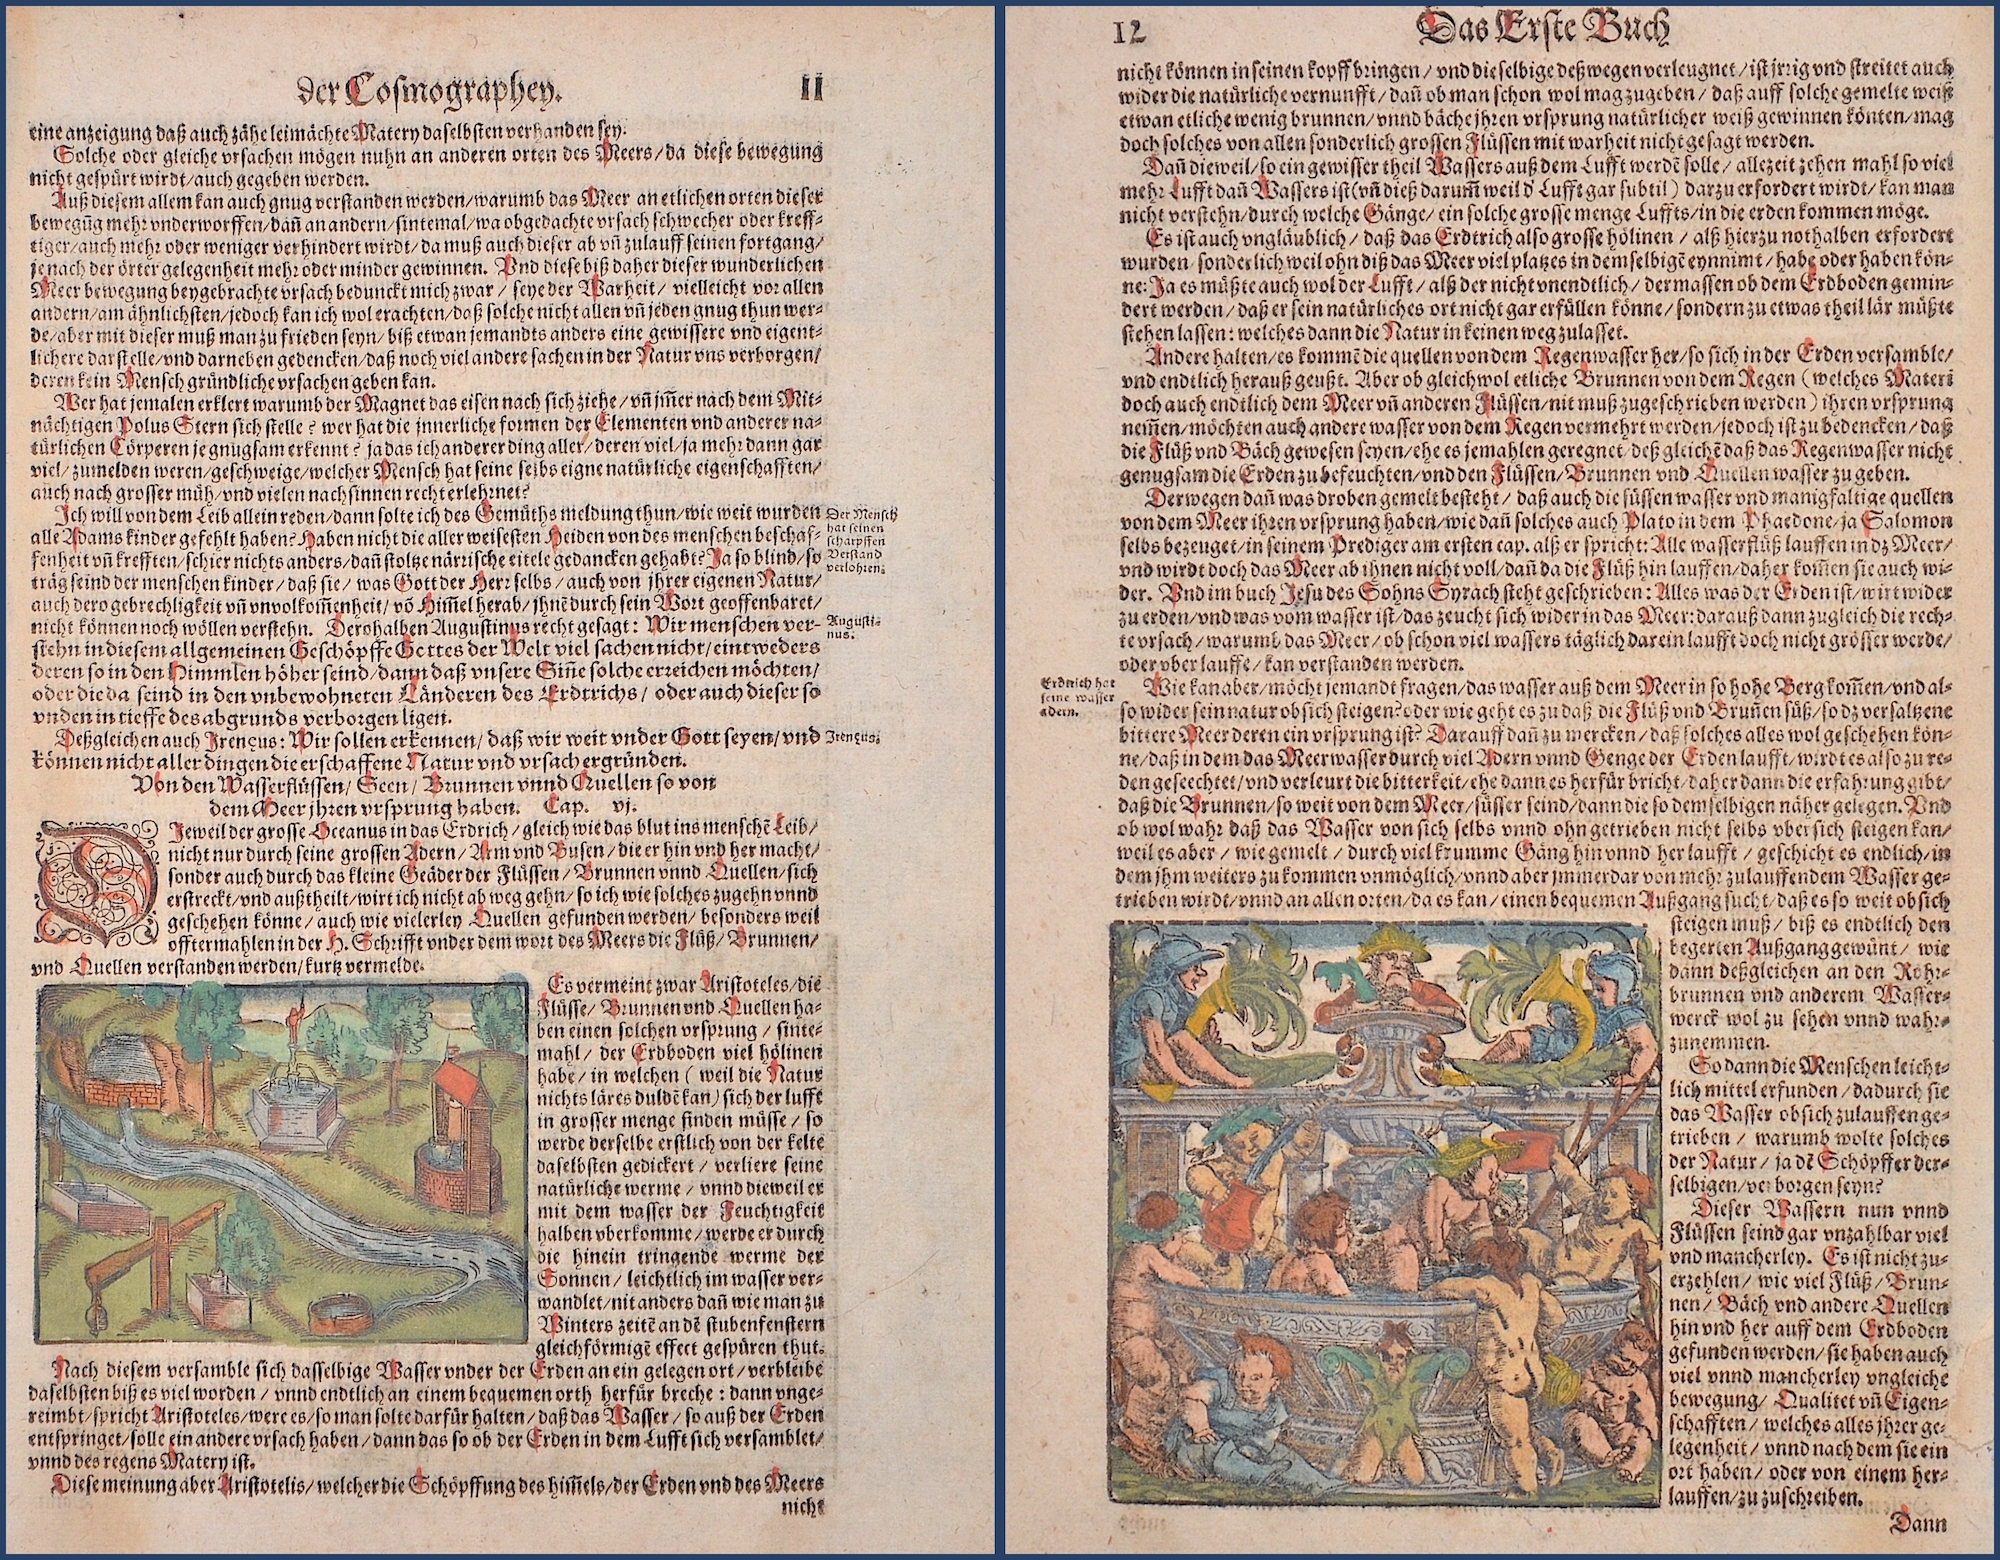 Münster  Das Erste Buch/ Erderich hat seine wasser adern